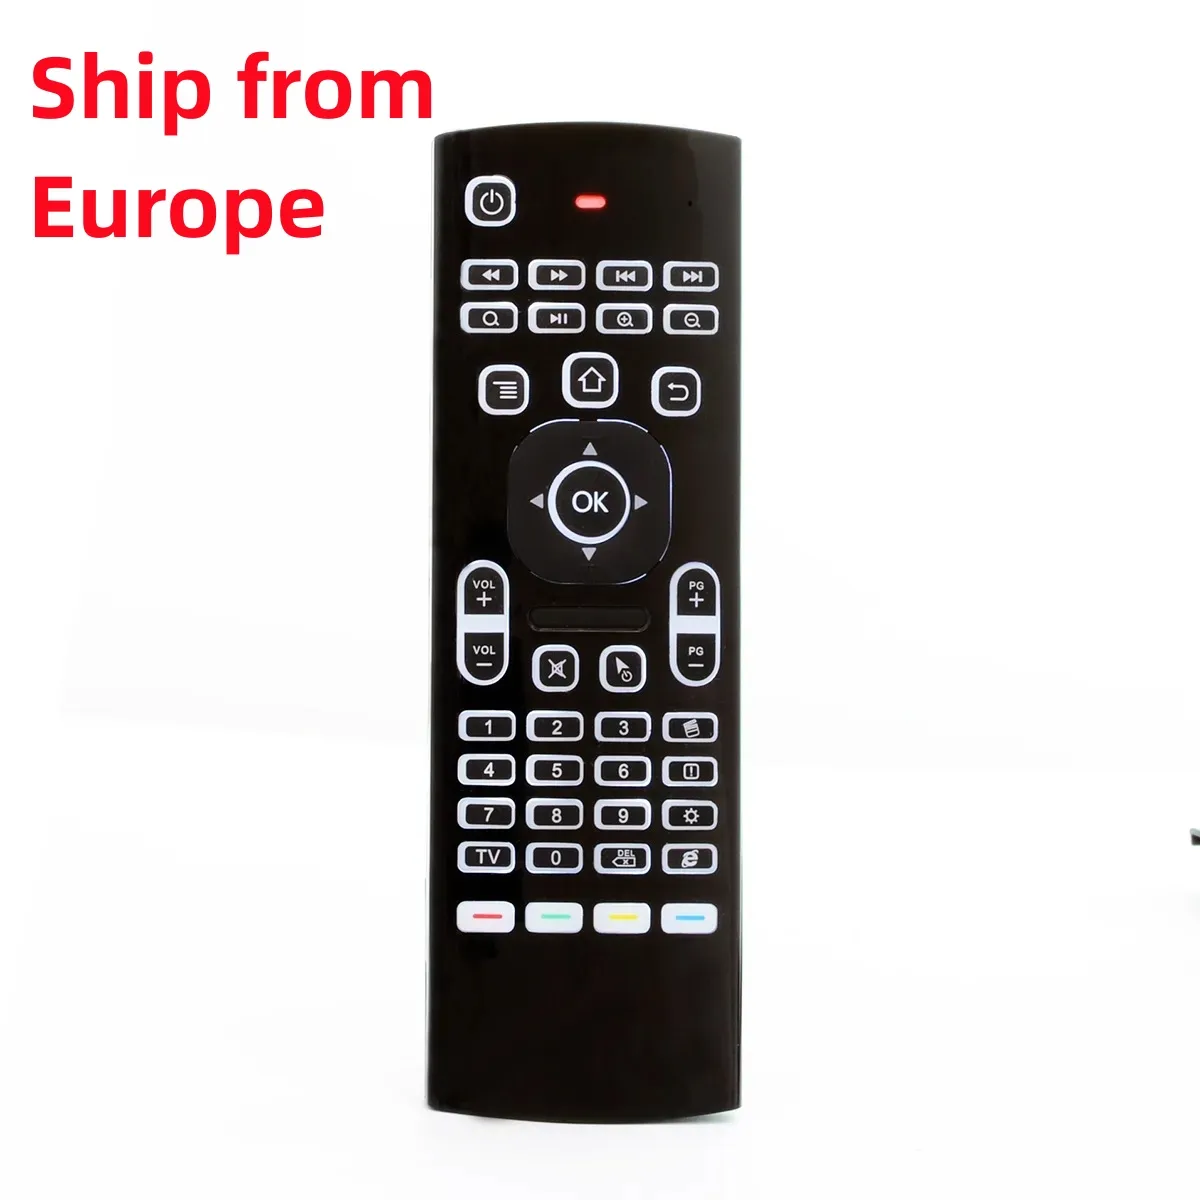 Skicka från Europa MX3 Luftmus med bakgrundsbelysning Bakgrundsbelyst 2.4 GHz x8 Trådlöst tangentbord Remote Control IR Learning for Android TV Box